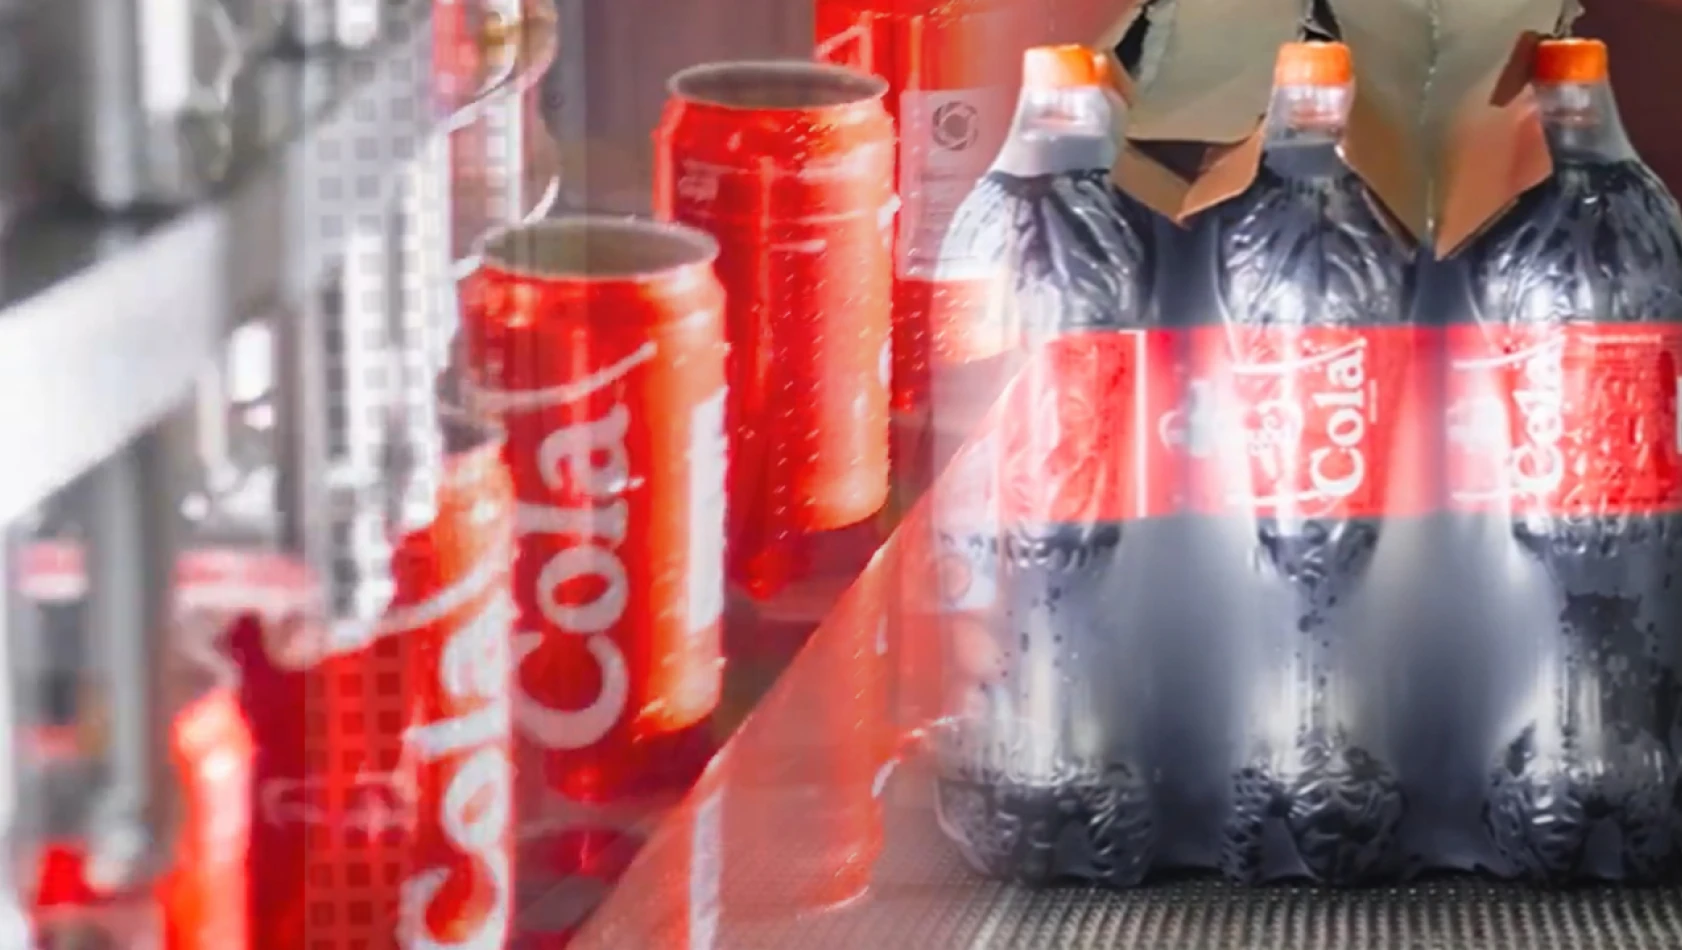 Yerli Cola'yı Boykot Resmen Uçurdu!